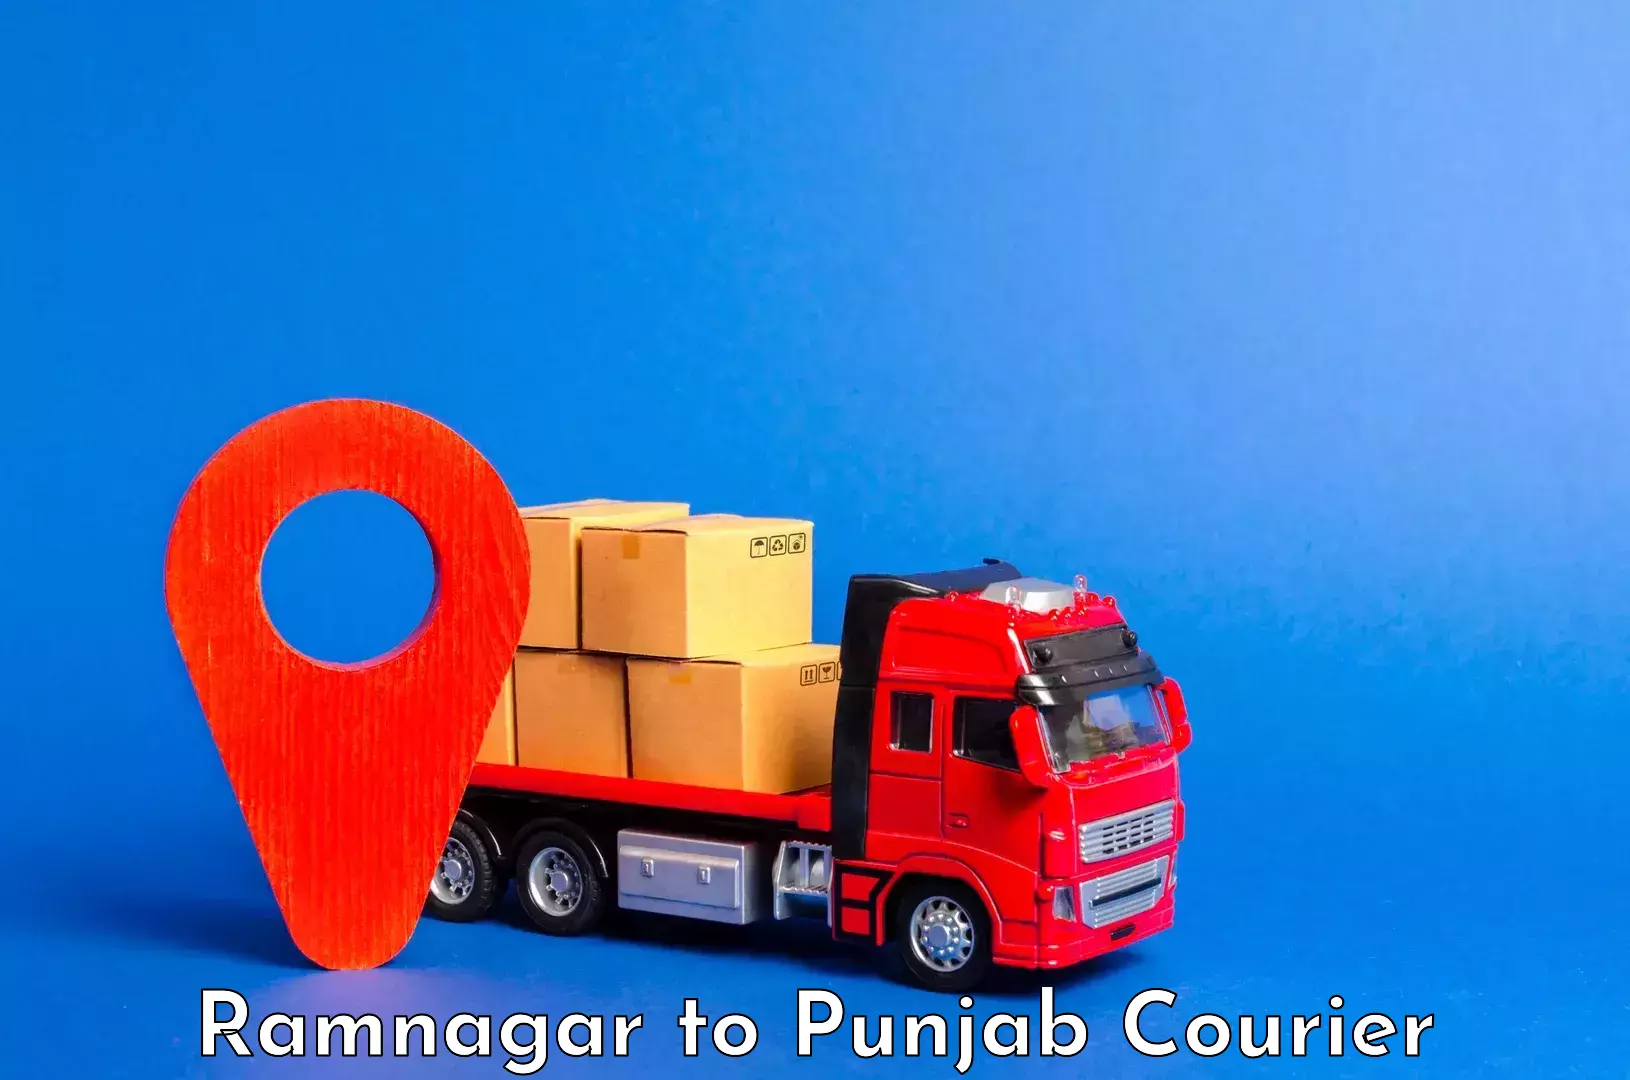 Baggage shipping service Ramnagar to Punjab